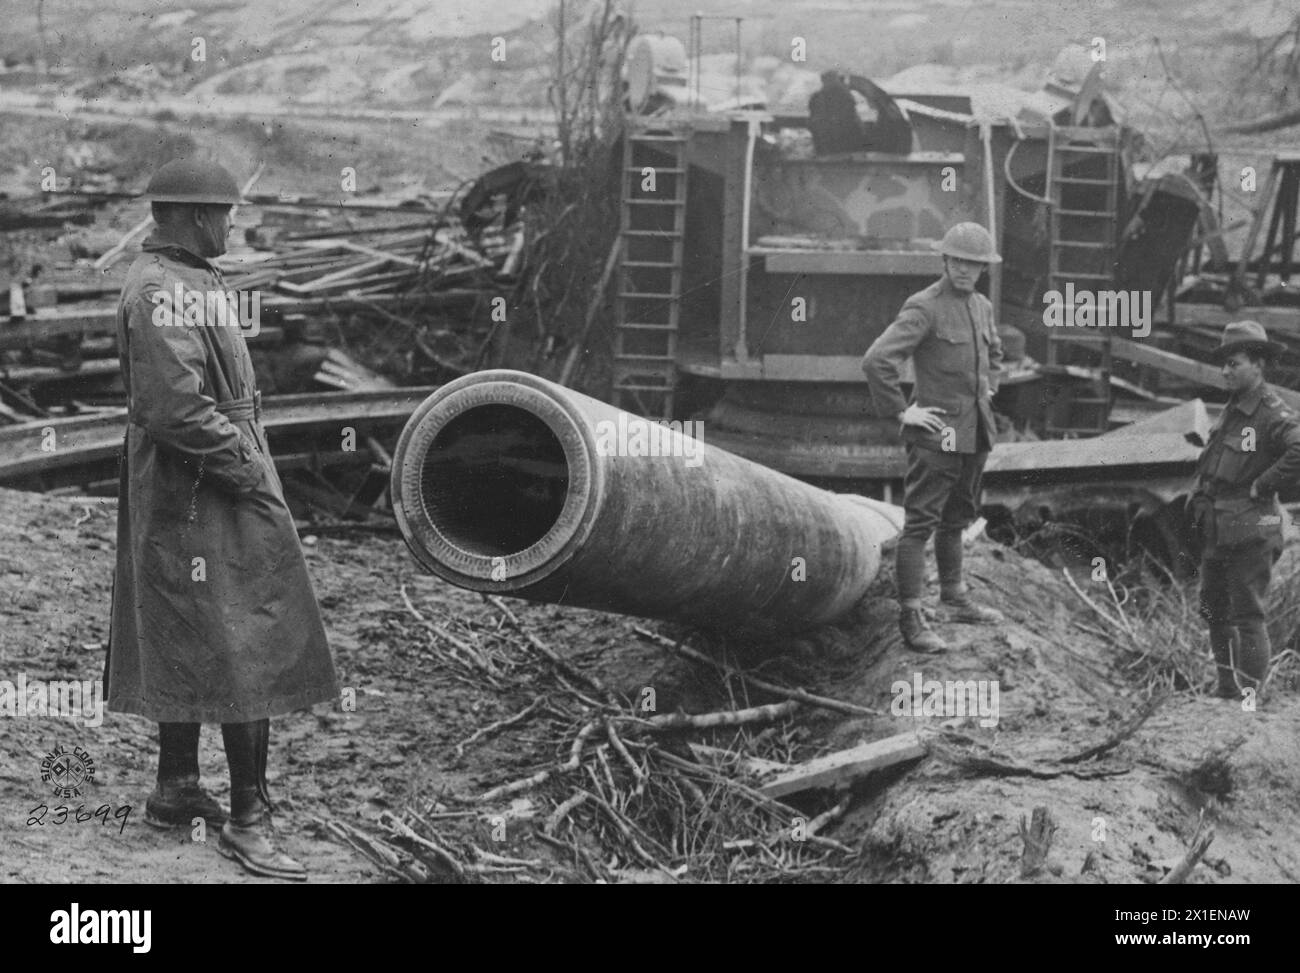 Avanzata americana sulla Cambrai - St Davanti a Quentin; invece di permettere che il cannone Big Bertha cadesse nelle mani degli americani, i tedeschi in ritirata fecero esplodere il loro cannone CA. 1917-1918 Foto Stock